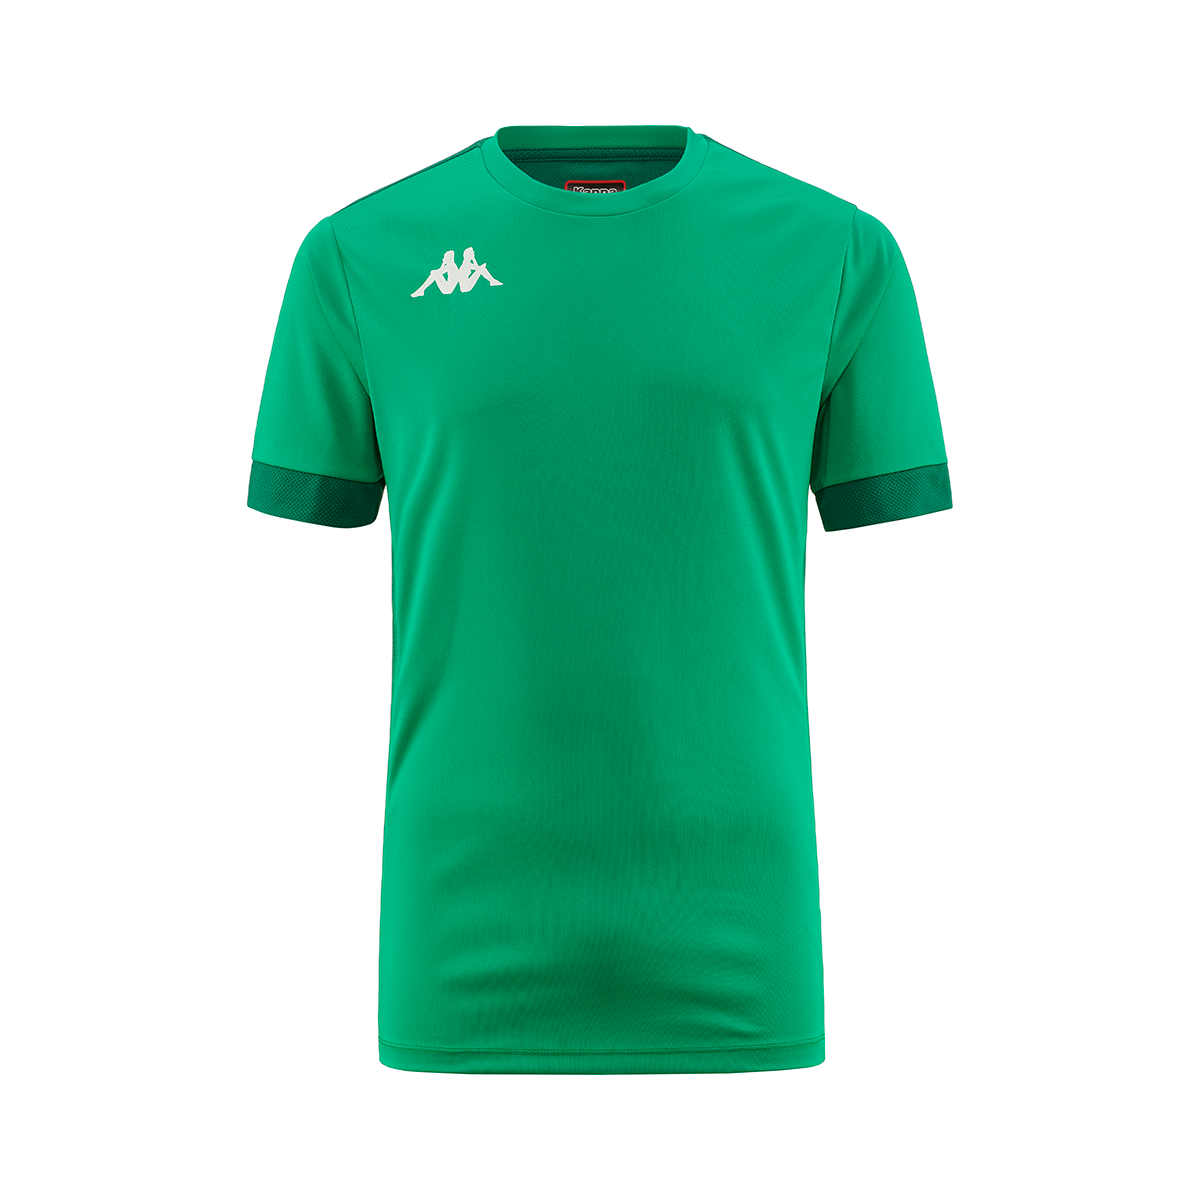 Camisetaa Dervia niño Verde - Imagen 1